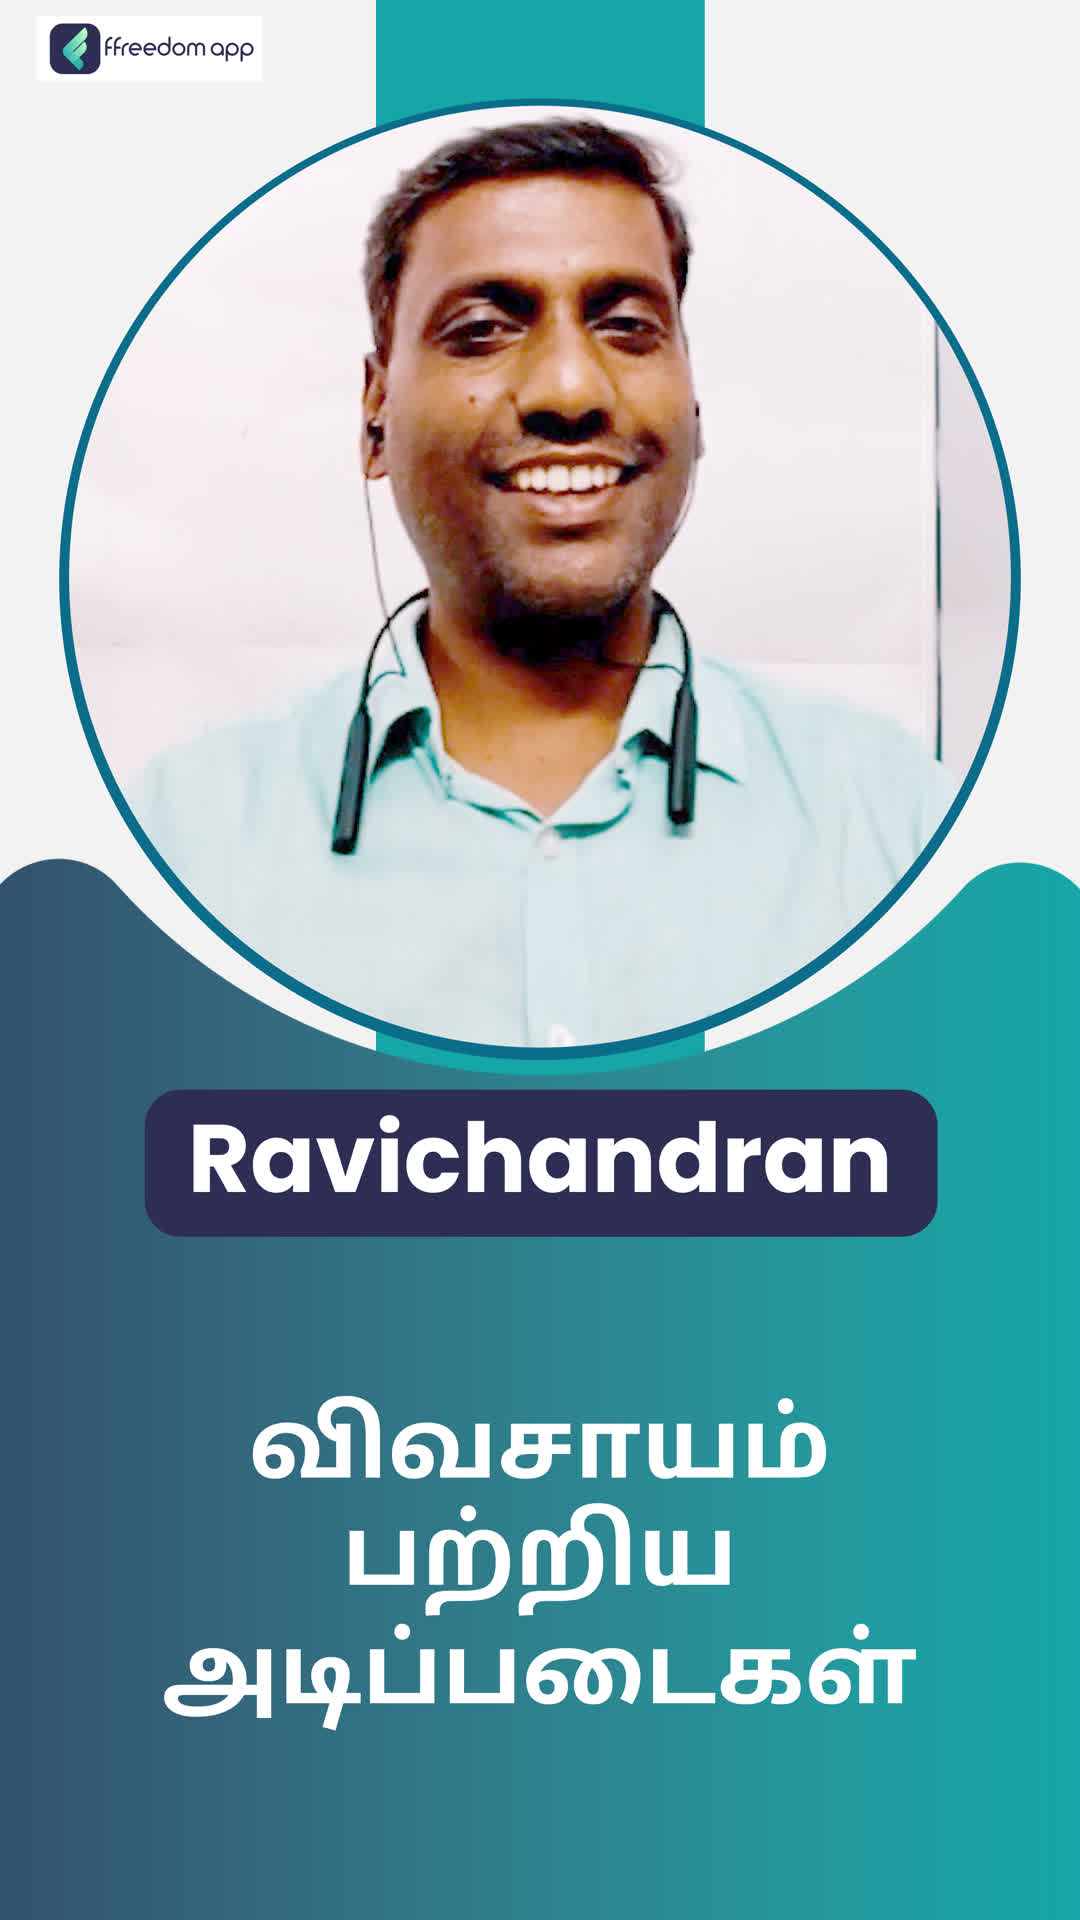 Ravichandran N's Honest Review of ffreedom app - Tiruppur ,Tamil Nadu